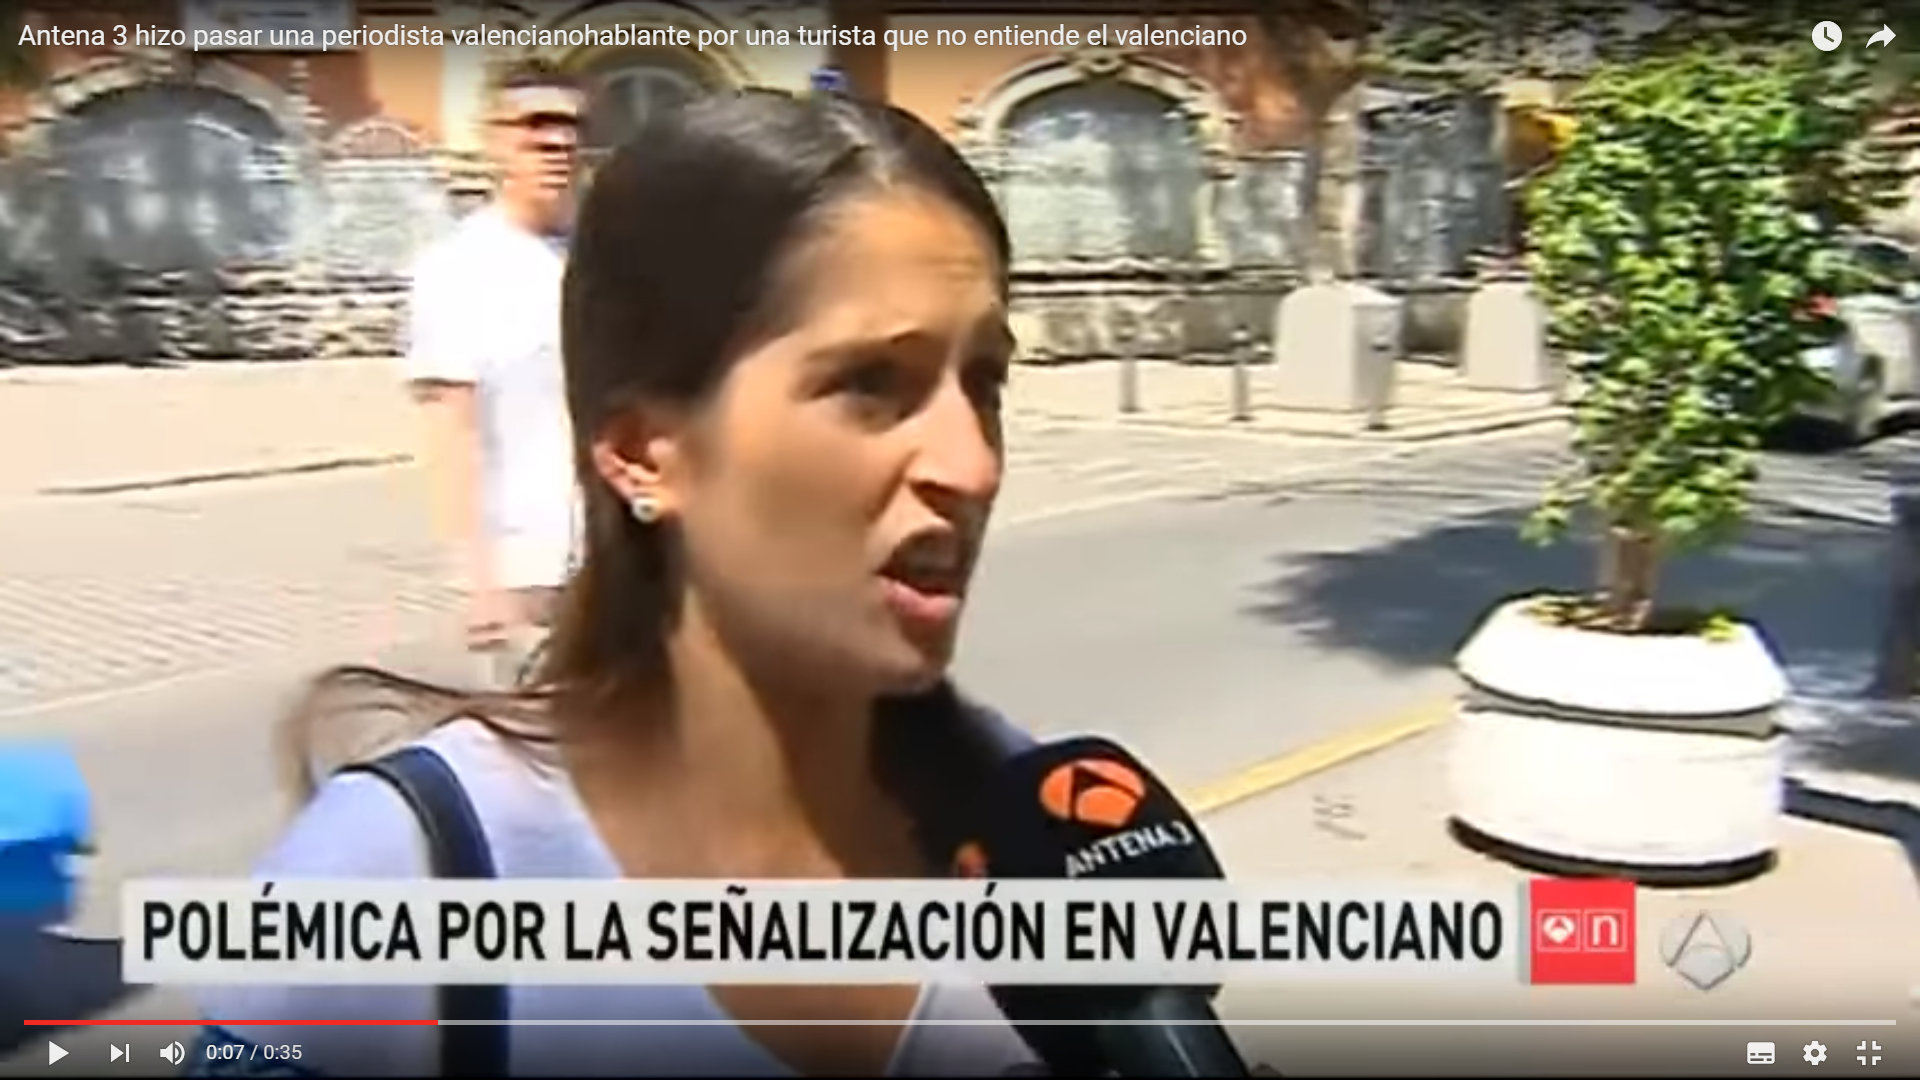 Antena 3 hace pasar a una periodista valencianoparlante por una turista que no entiende valenciano